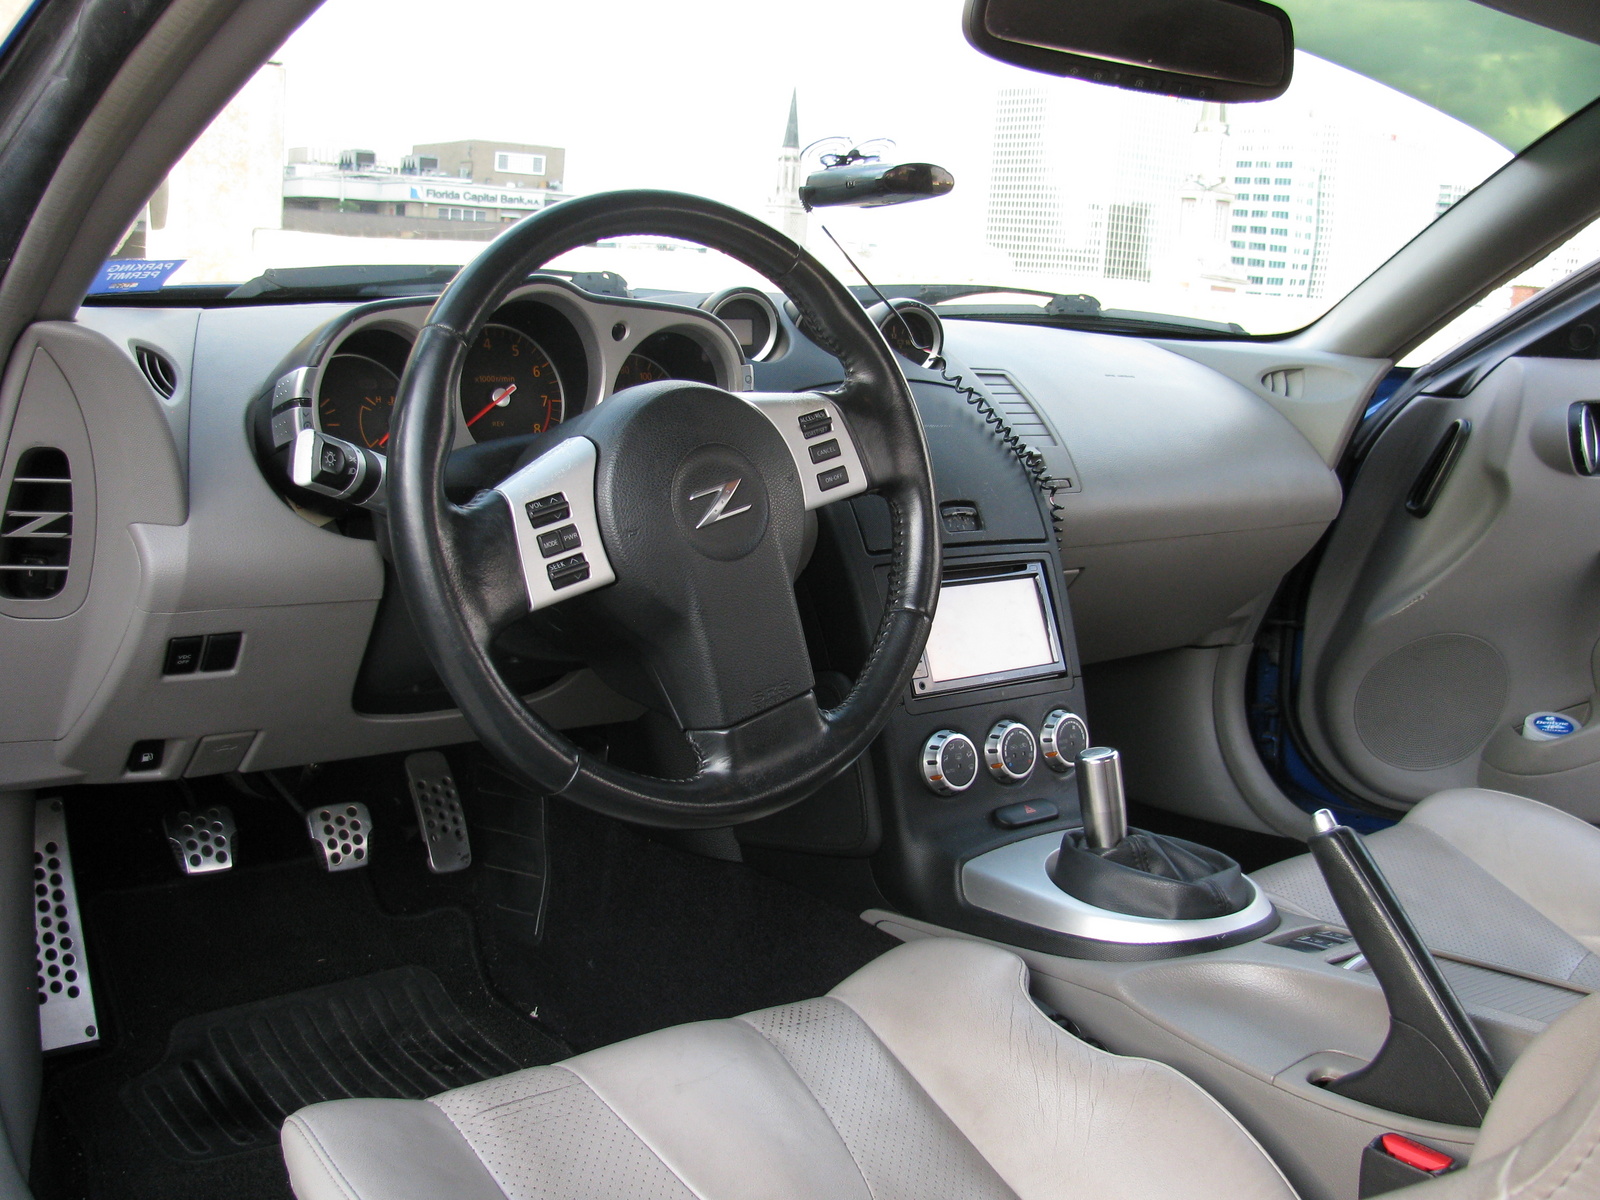 2006 Nissan 350z interior photos #6